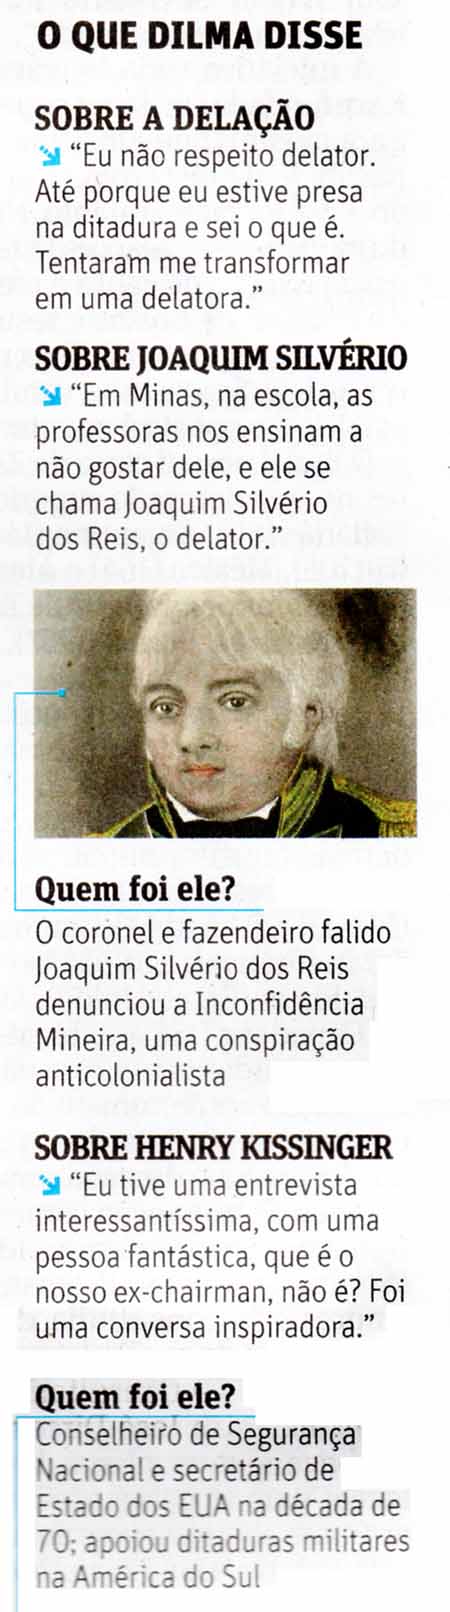 Folha de São Paulo - 30/06/15 - O que Dilma disse